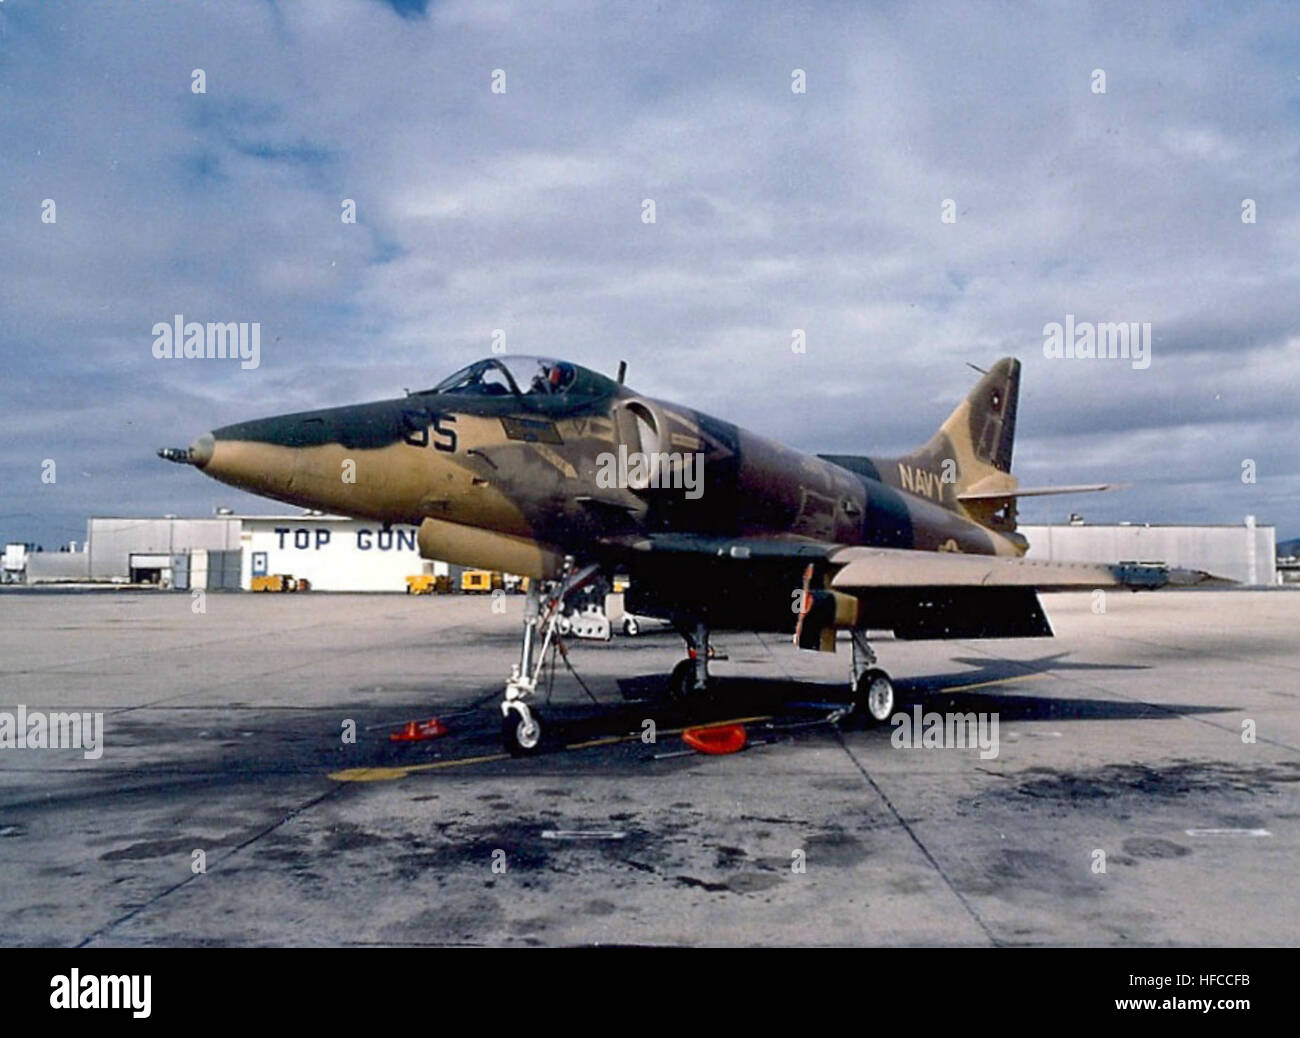 A-4E Skyhawk Top Gun at NAS Miramar Stock Photo - Alamy